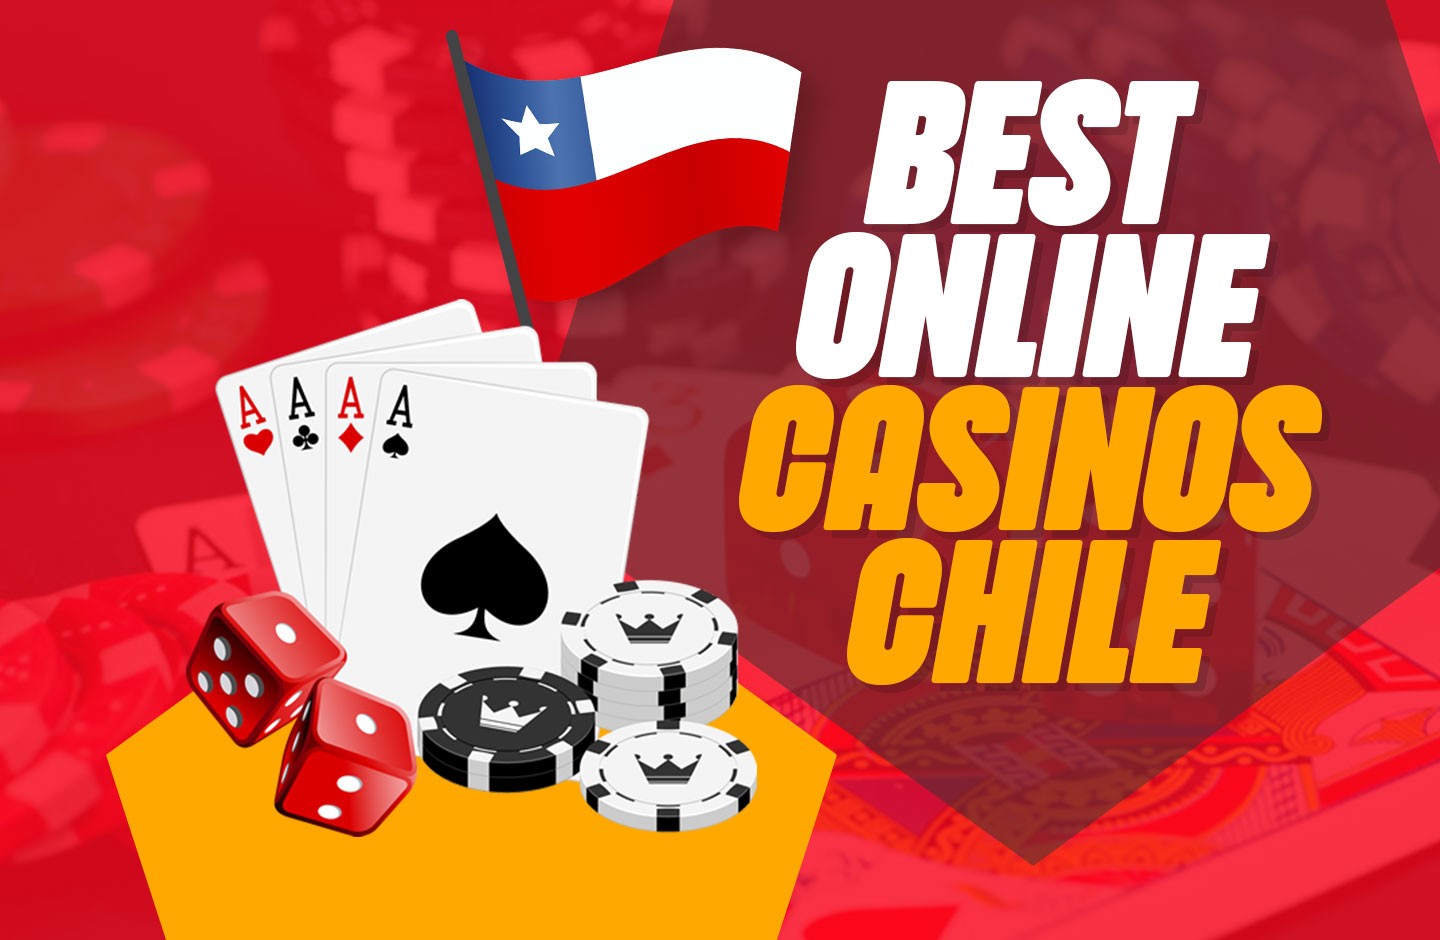 Más información sobre cómo ganarse la vida con mejores casinos online chile